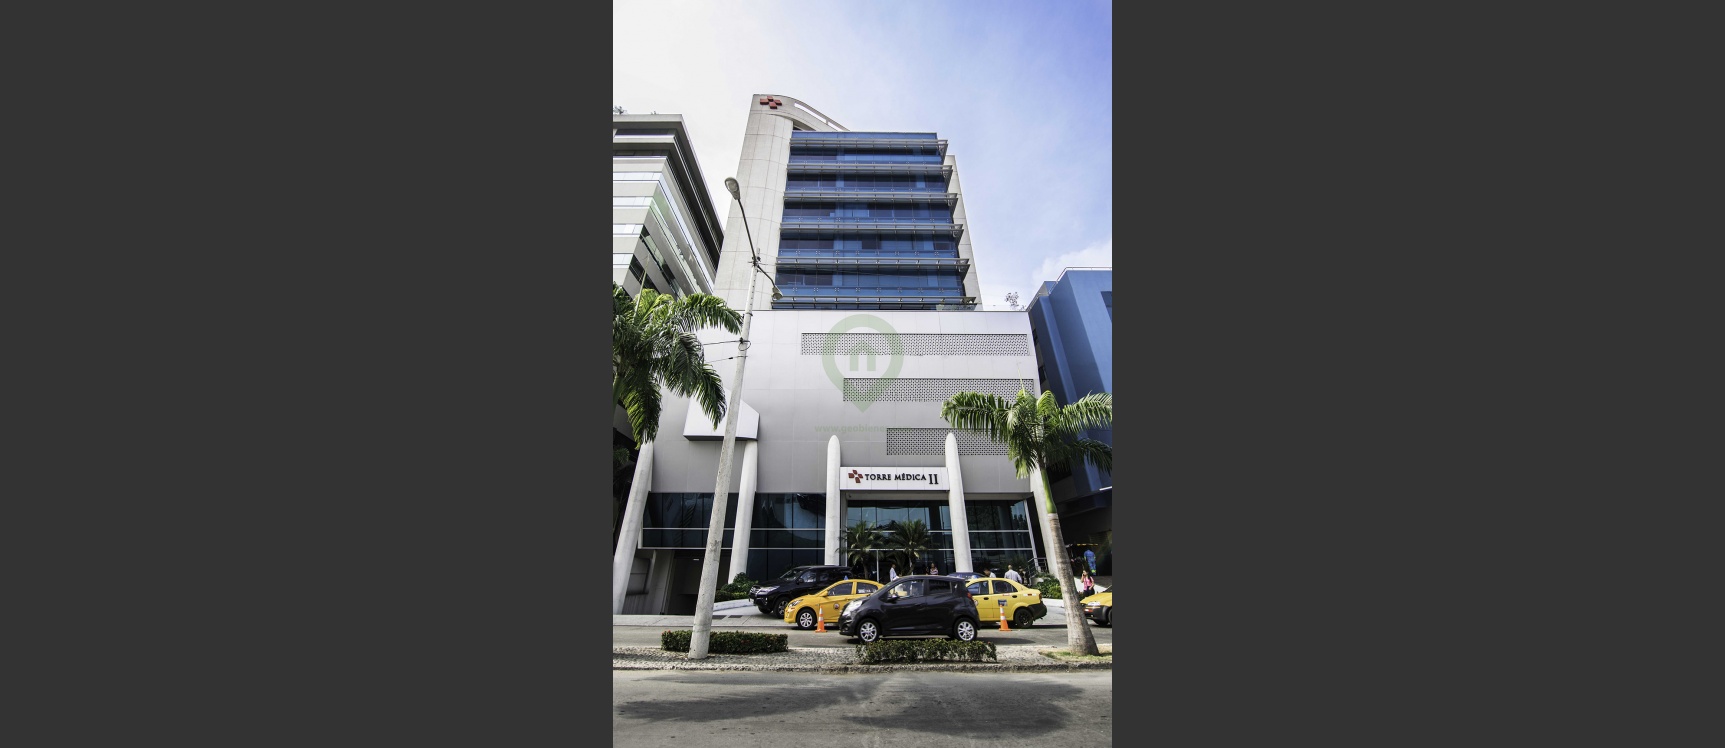 GeoBienes - Parqueos en Alquiler en Torre Medica II Norte de Guayaquil - Plusvalia Guayaquil Casas de venta y alquiler Inmobiliaria Ecuador